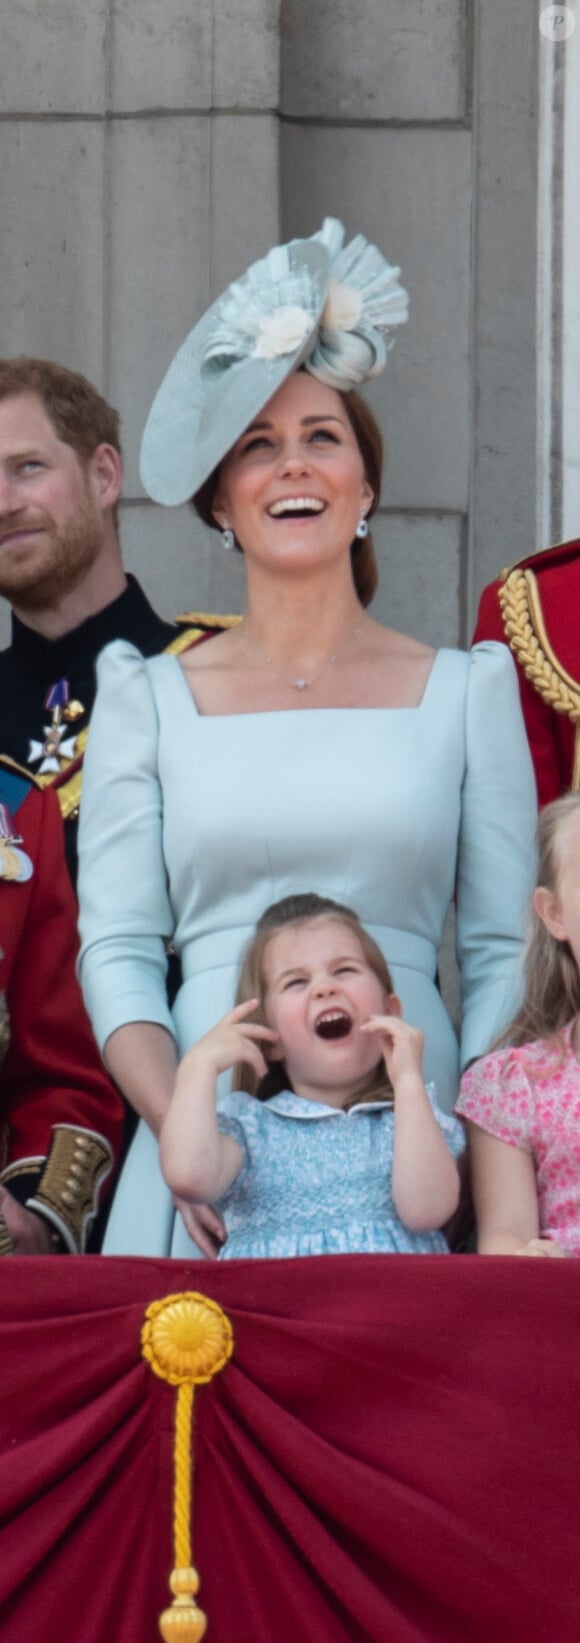 Et ce depuis que Charlotte est toute petite !
Catherine (Kate) Middleton, duchesse de Cambridge, la princesse Charlotte de Cambridge - Les membres de la famille royale britannique lors du rassemblement militaire "Trooping the Colour" (le "salut aux couleurs"), célébrant l'anniversaire officiel du souverain britannique. Cette parade a lieu à Horse Guards Parade, chaque année au cours du deuxième samedi du mois de juin. Londres, le 9 juin 2018.